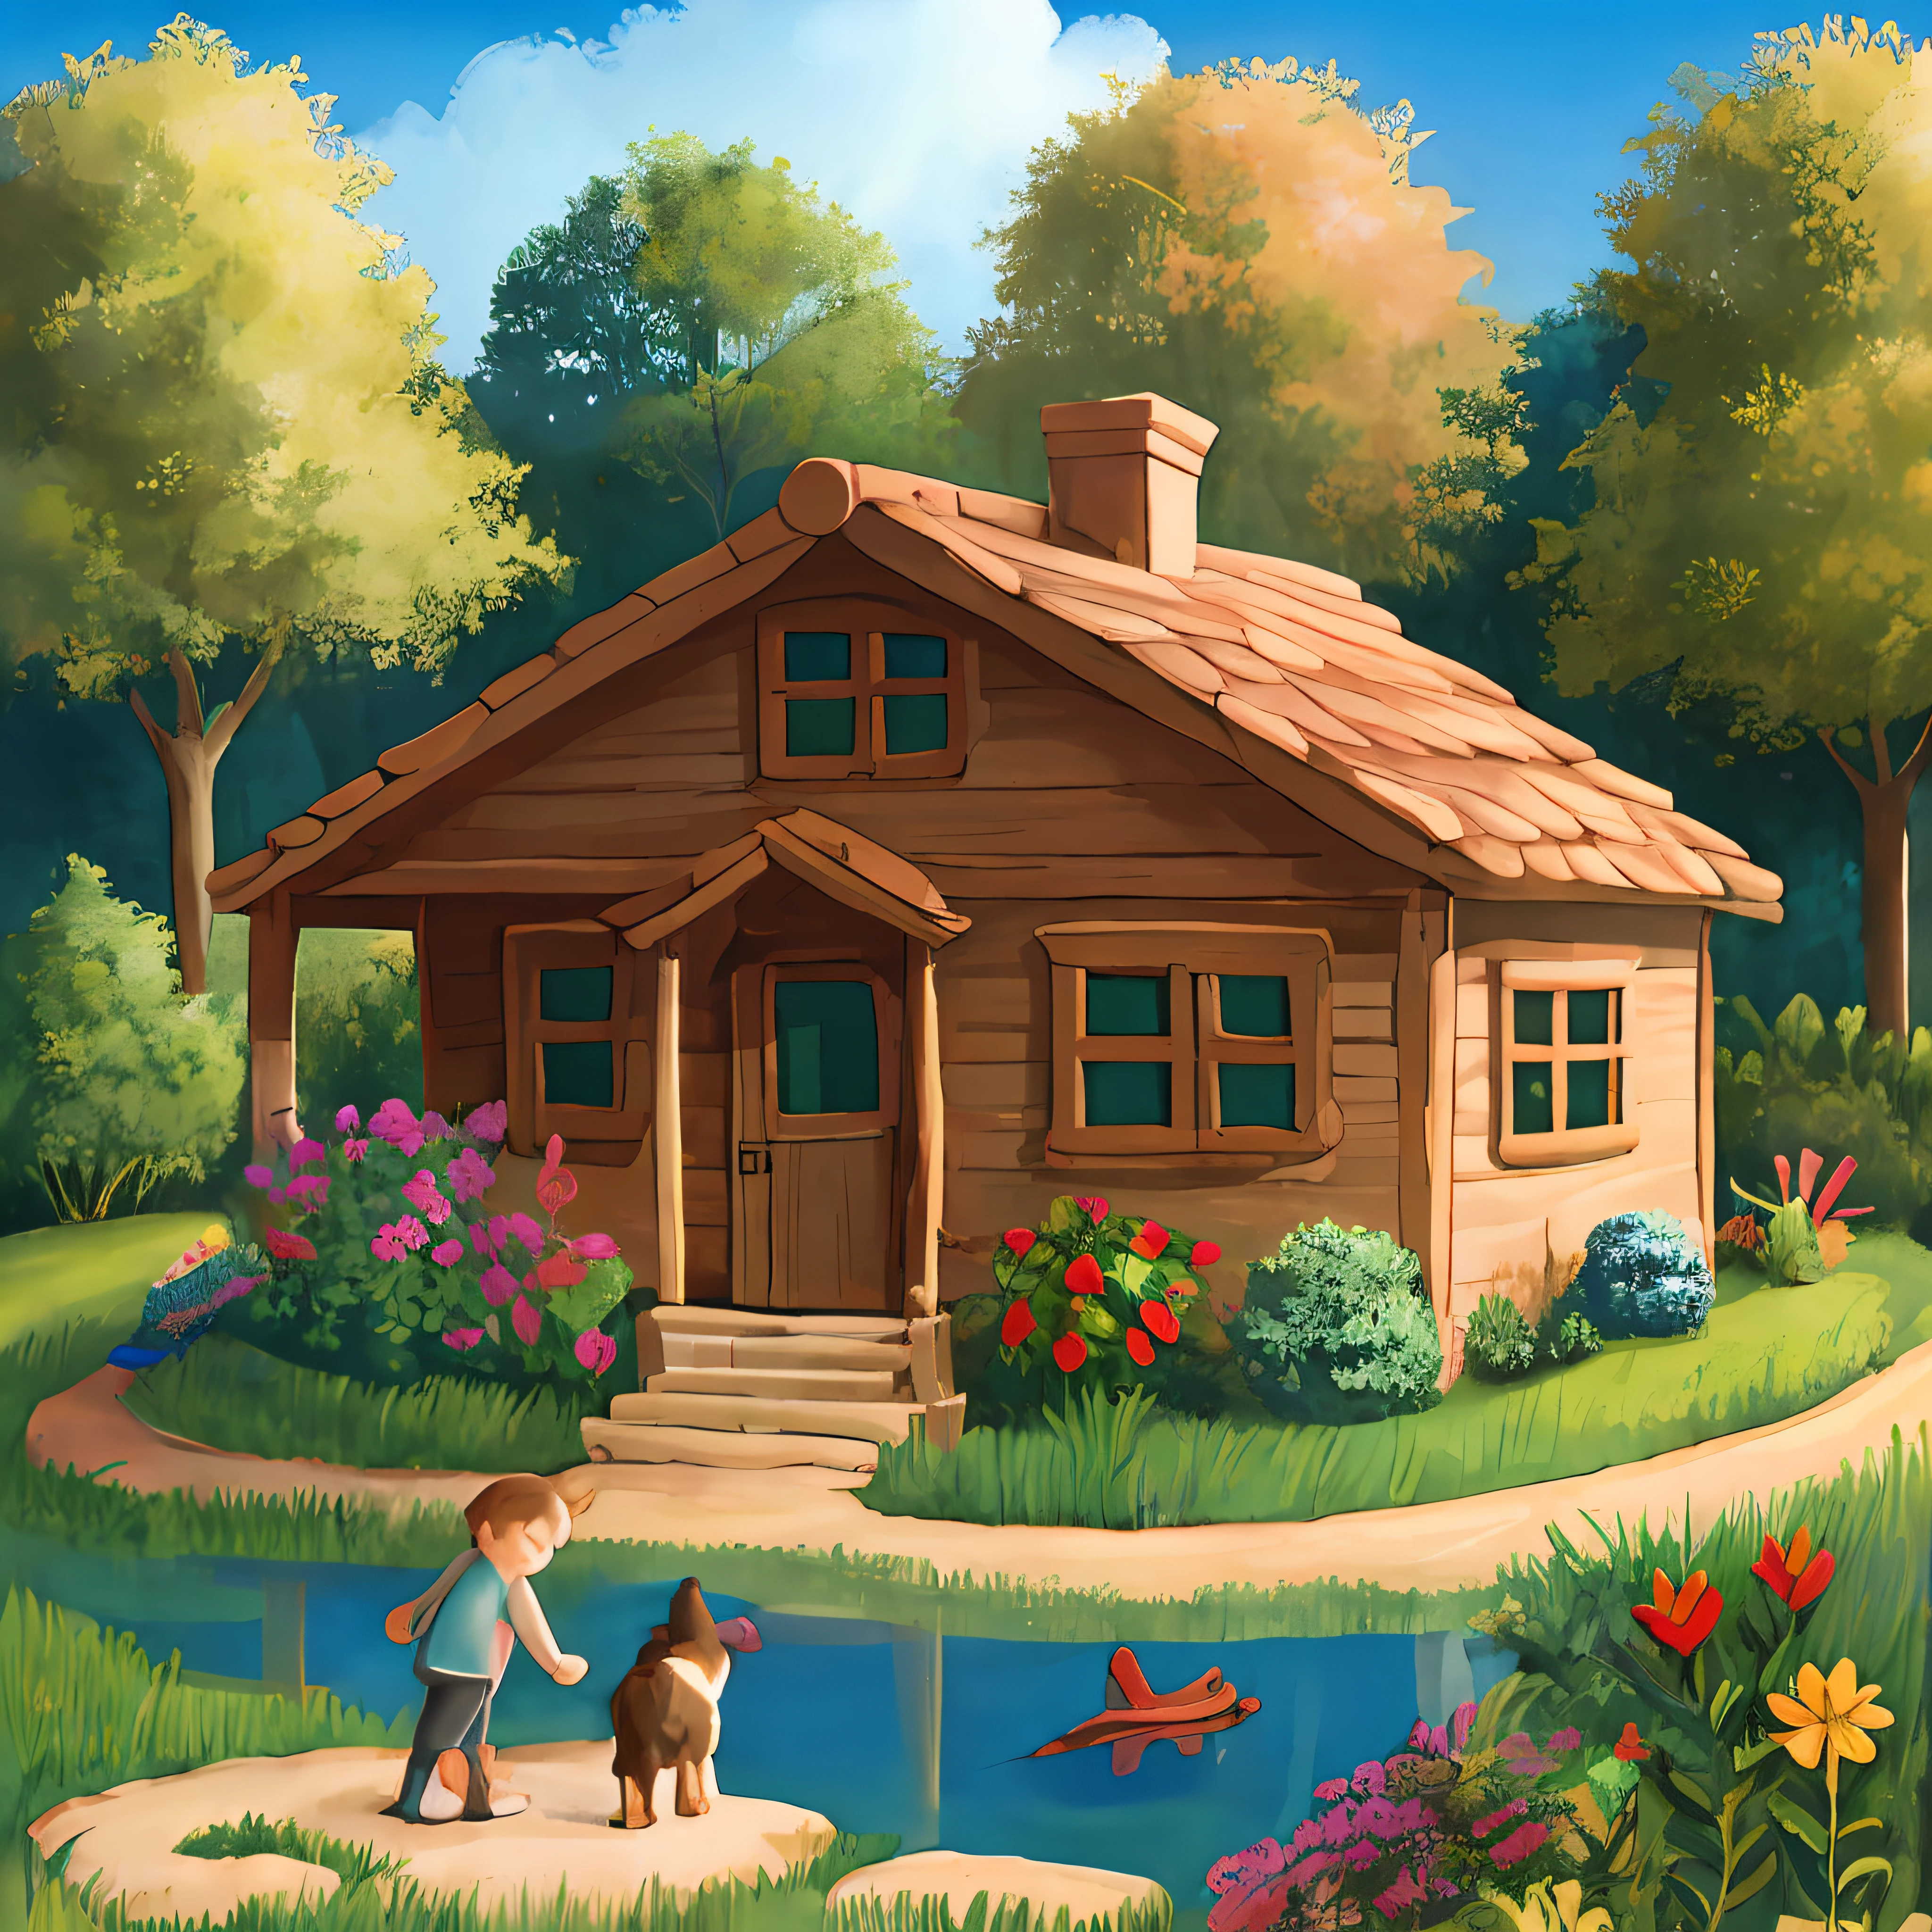 带有房子的粘土景观, 背景是一个池塘，旁边有一个玩球的小狗, 房子附近